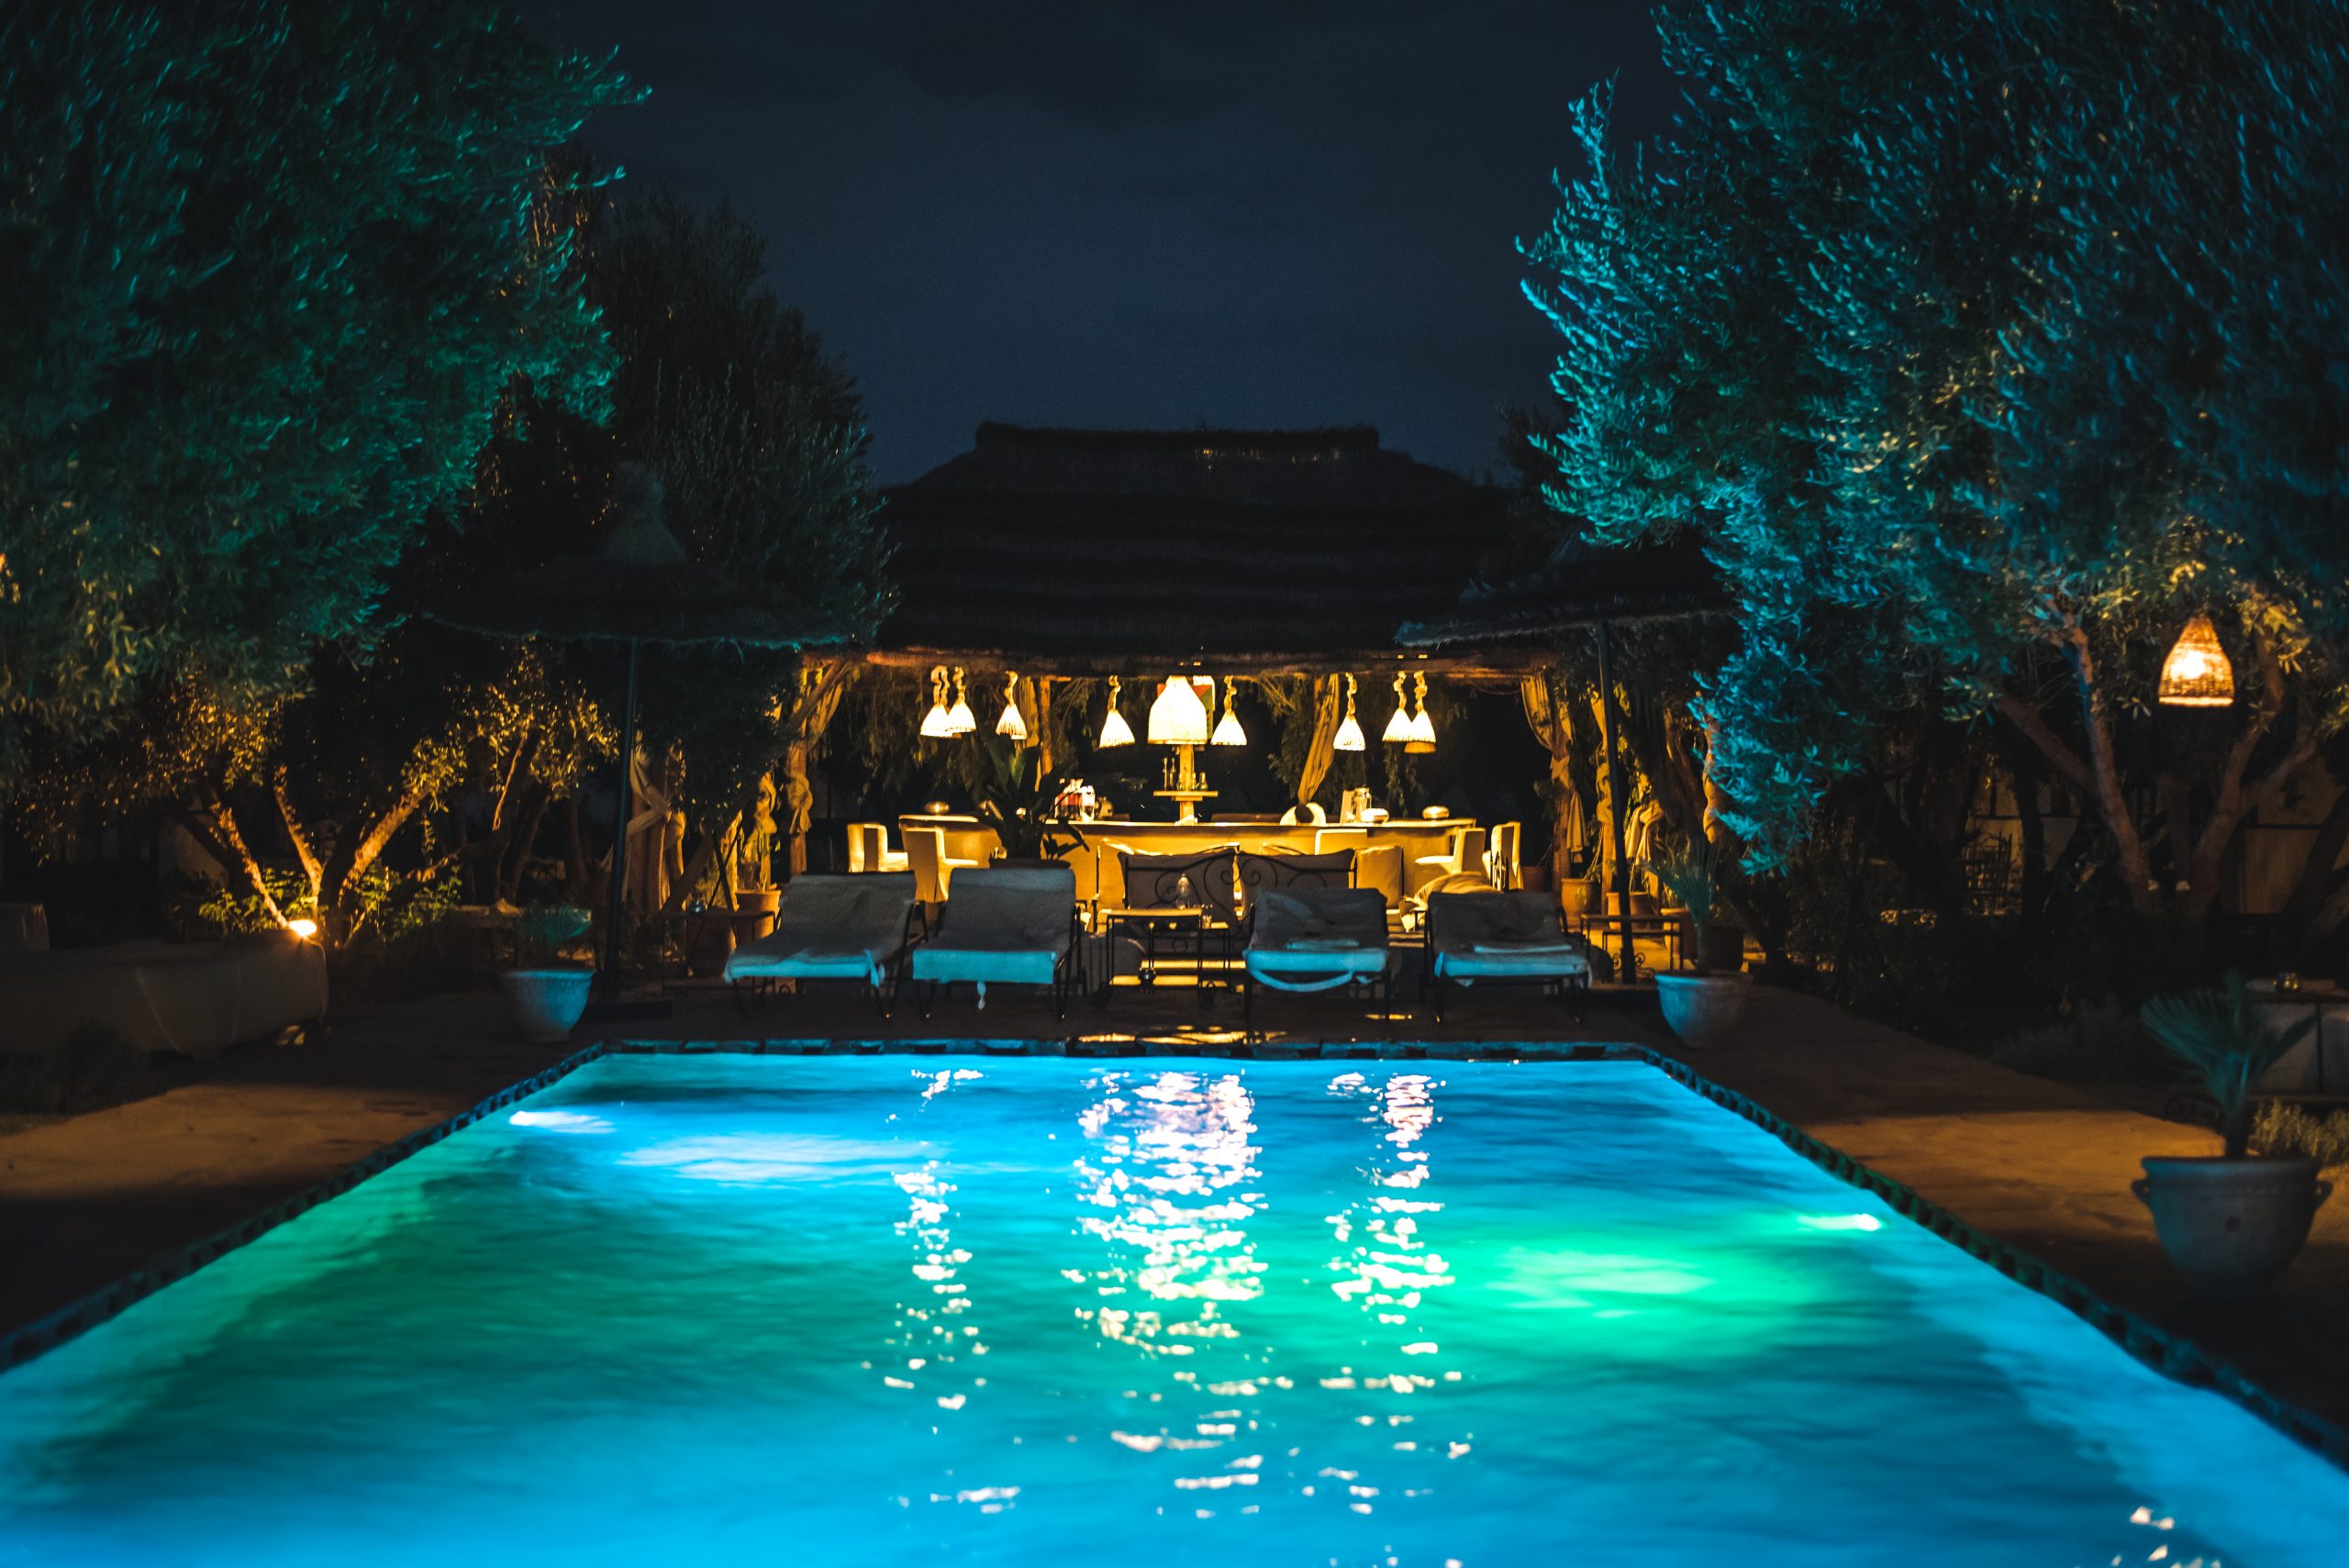 Iluminação externa para uso de piscina também à noite